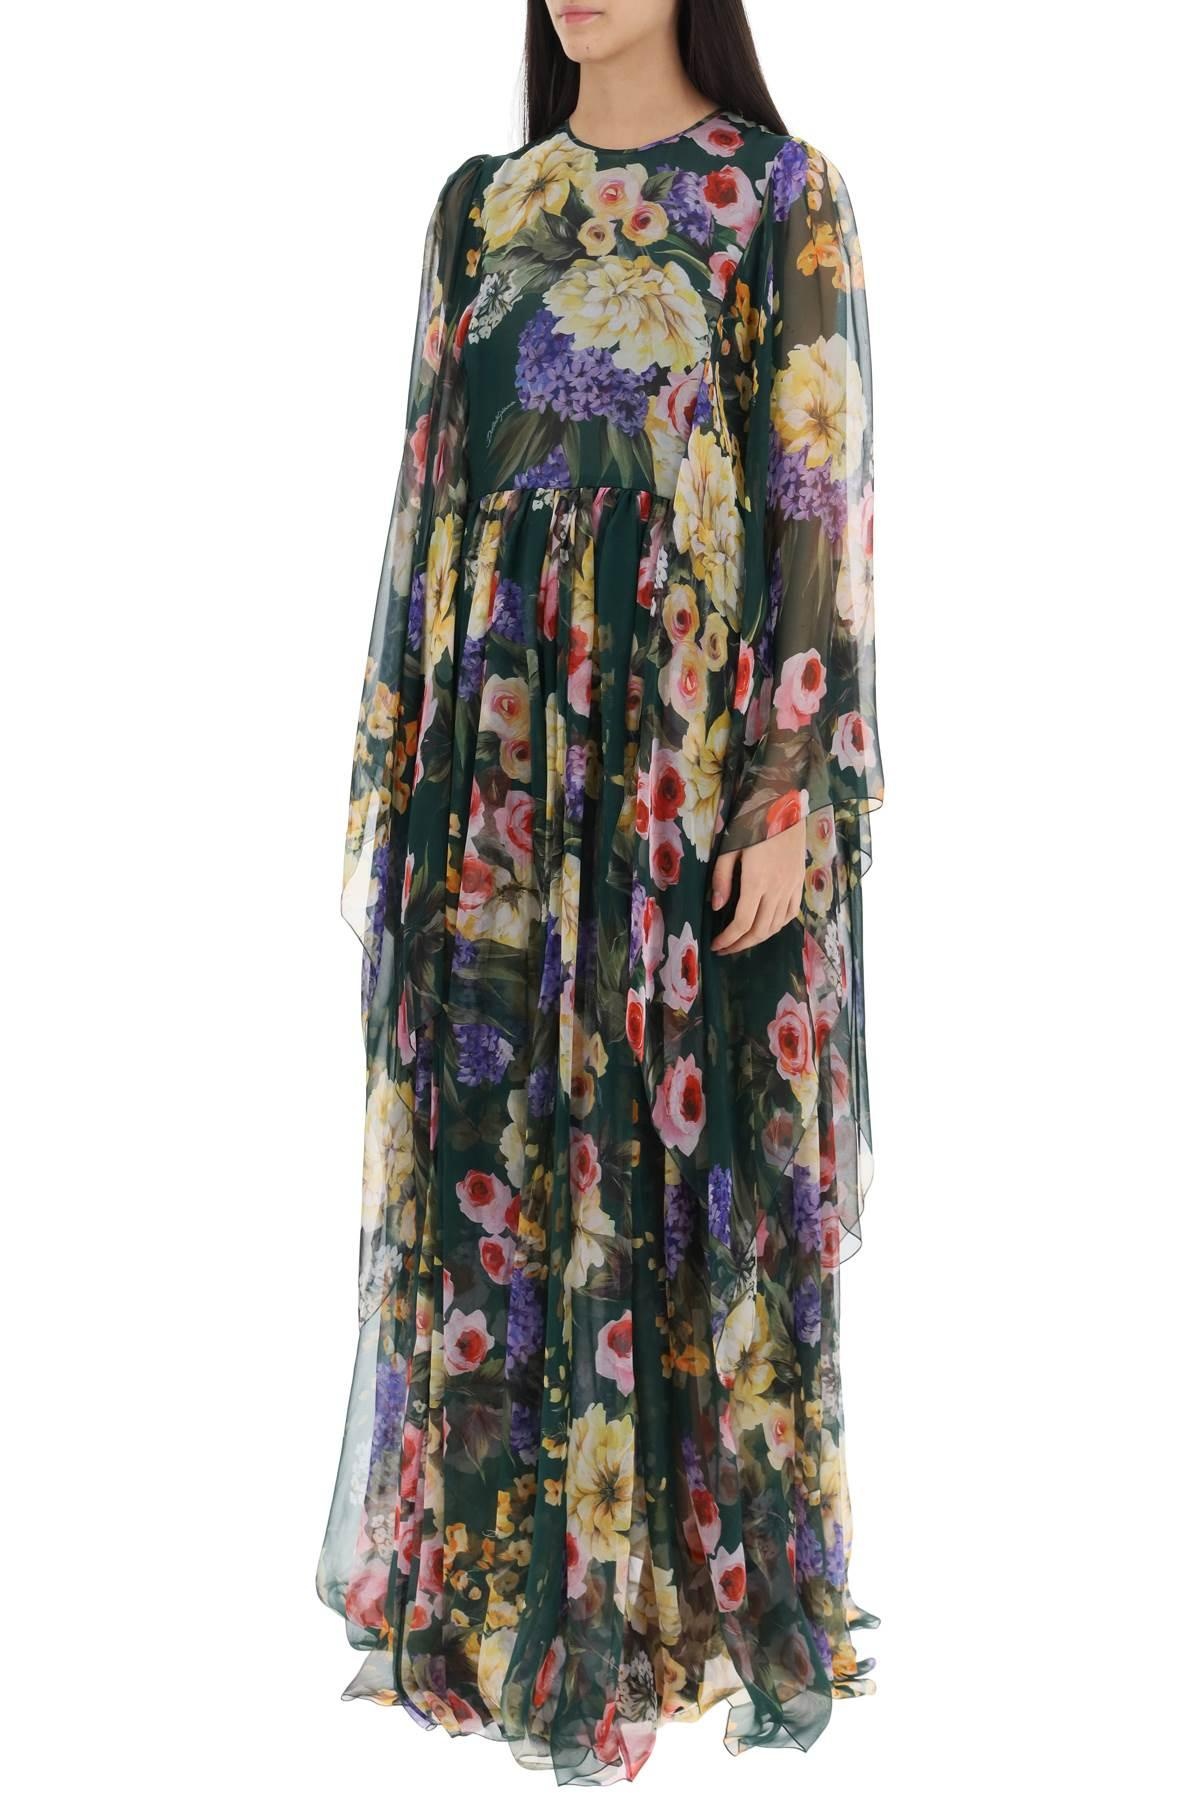 Dolce & Gabbana Chiffon Maxi Dress With Garden Print - 5